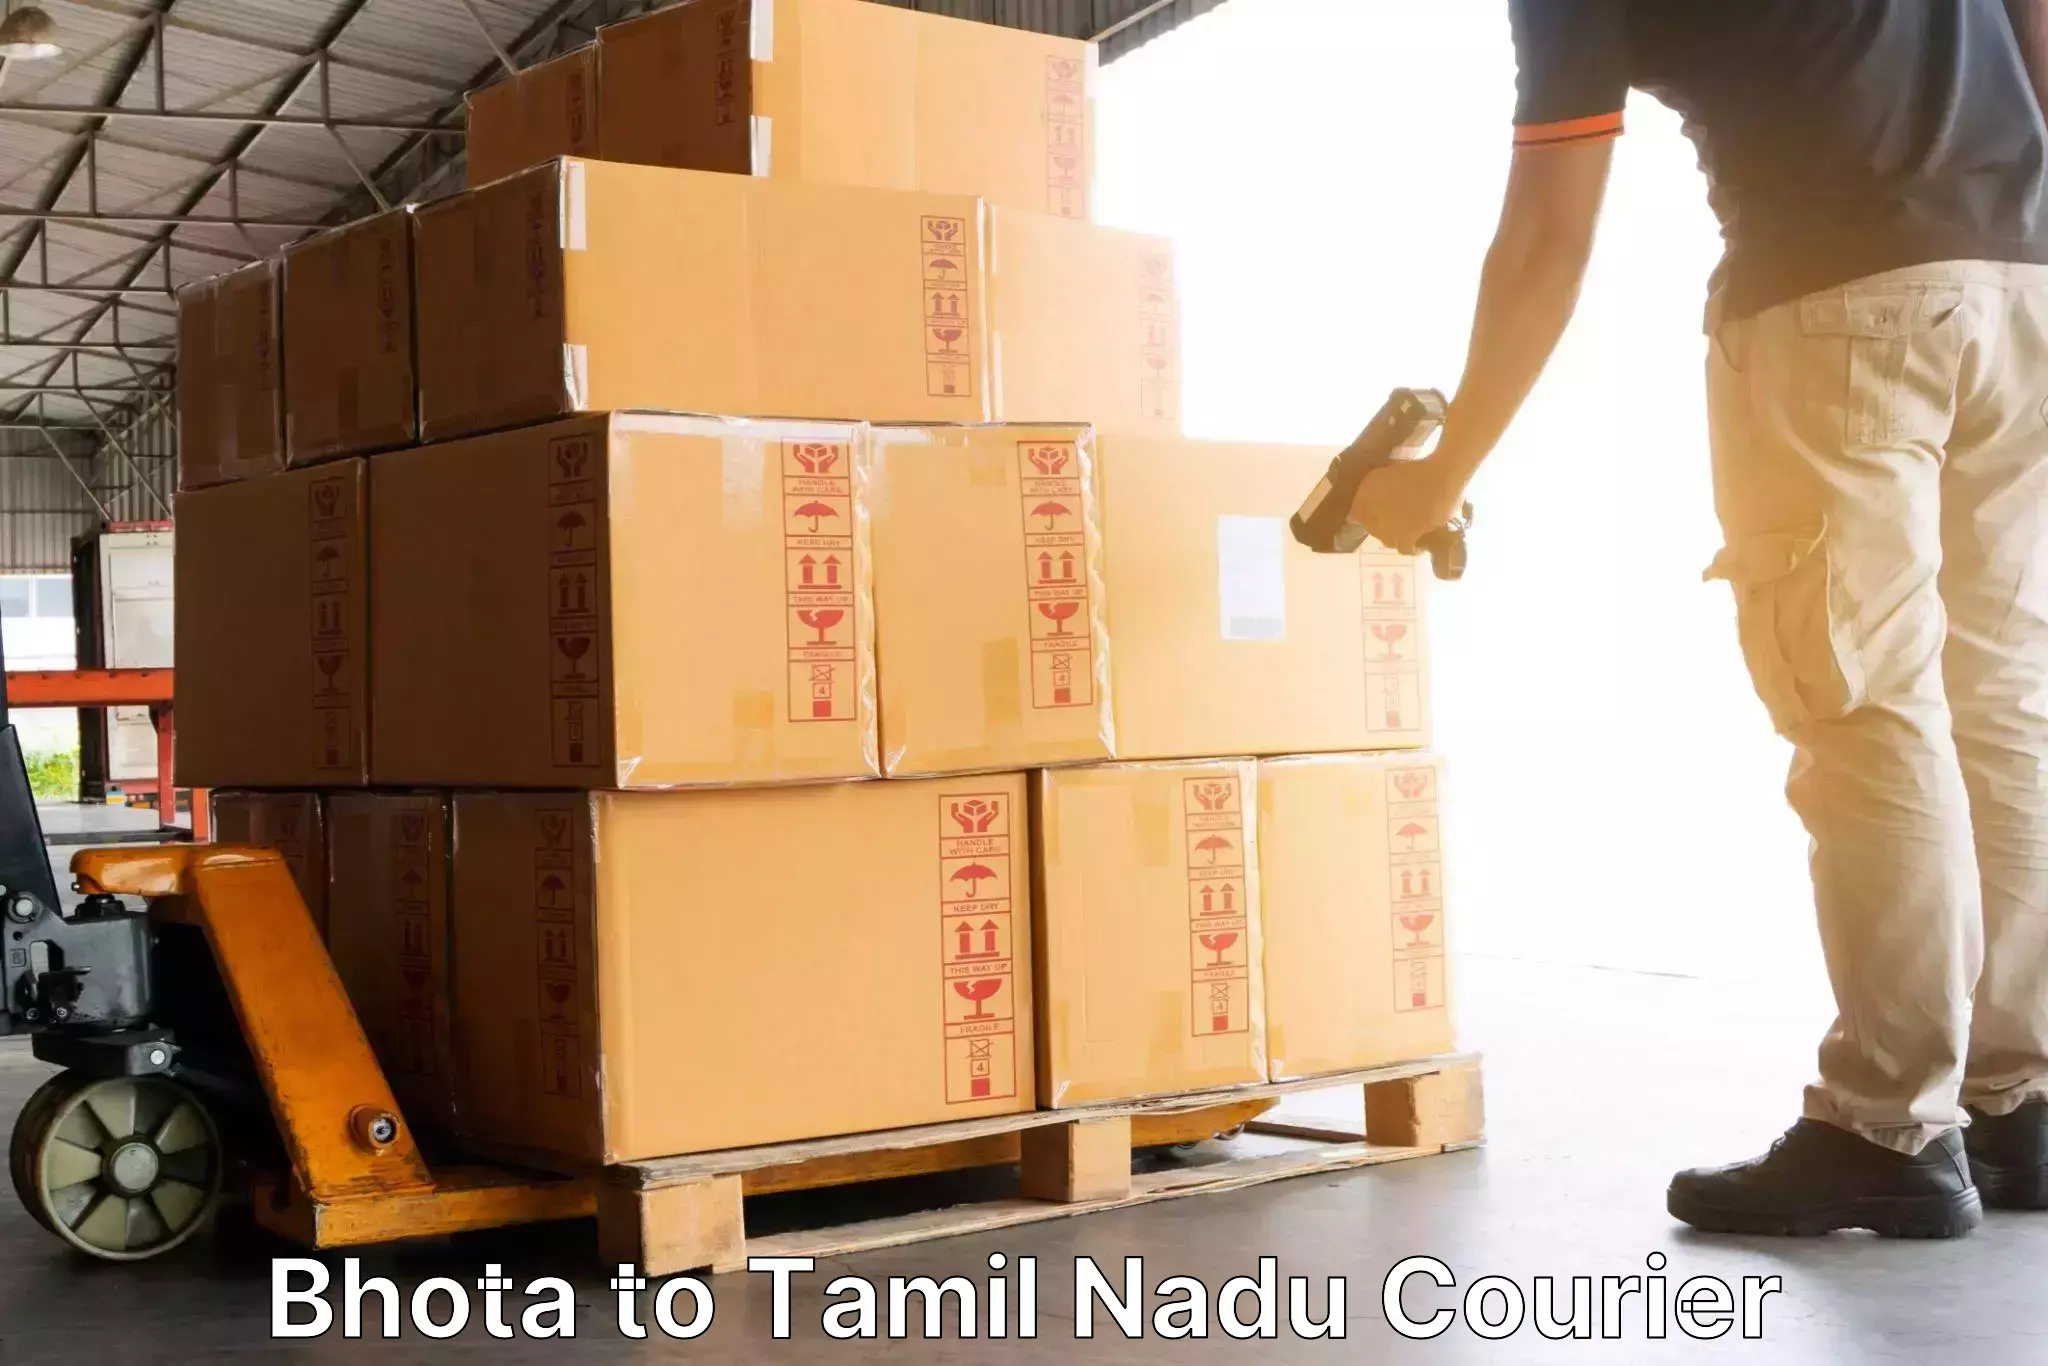 Door-to-door freight service Bhota to Vilathikulam